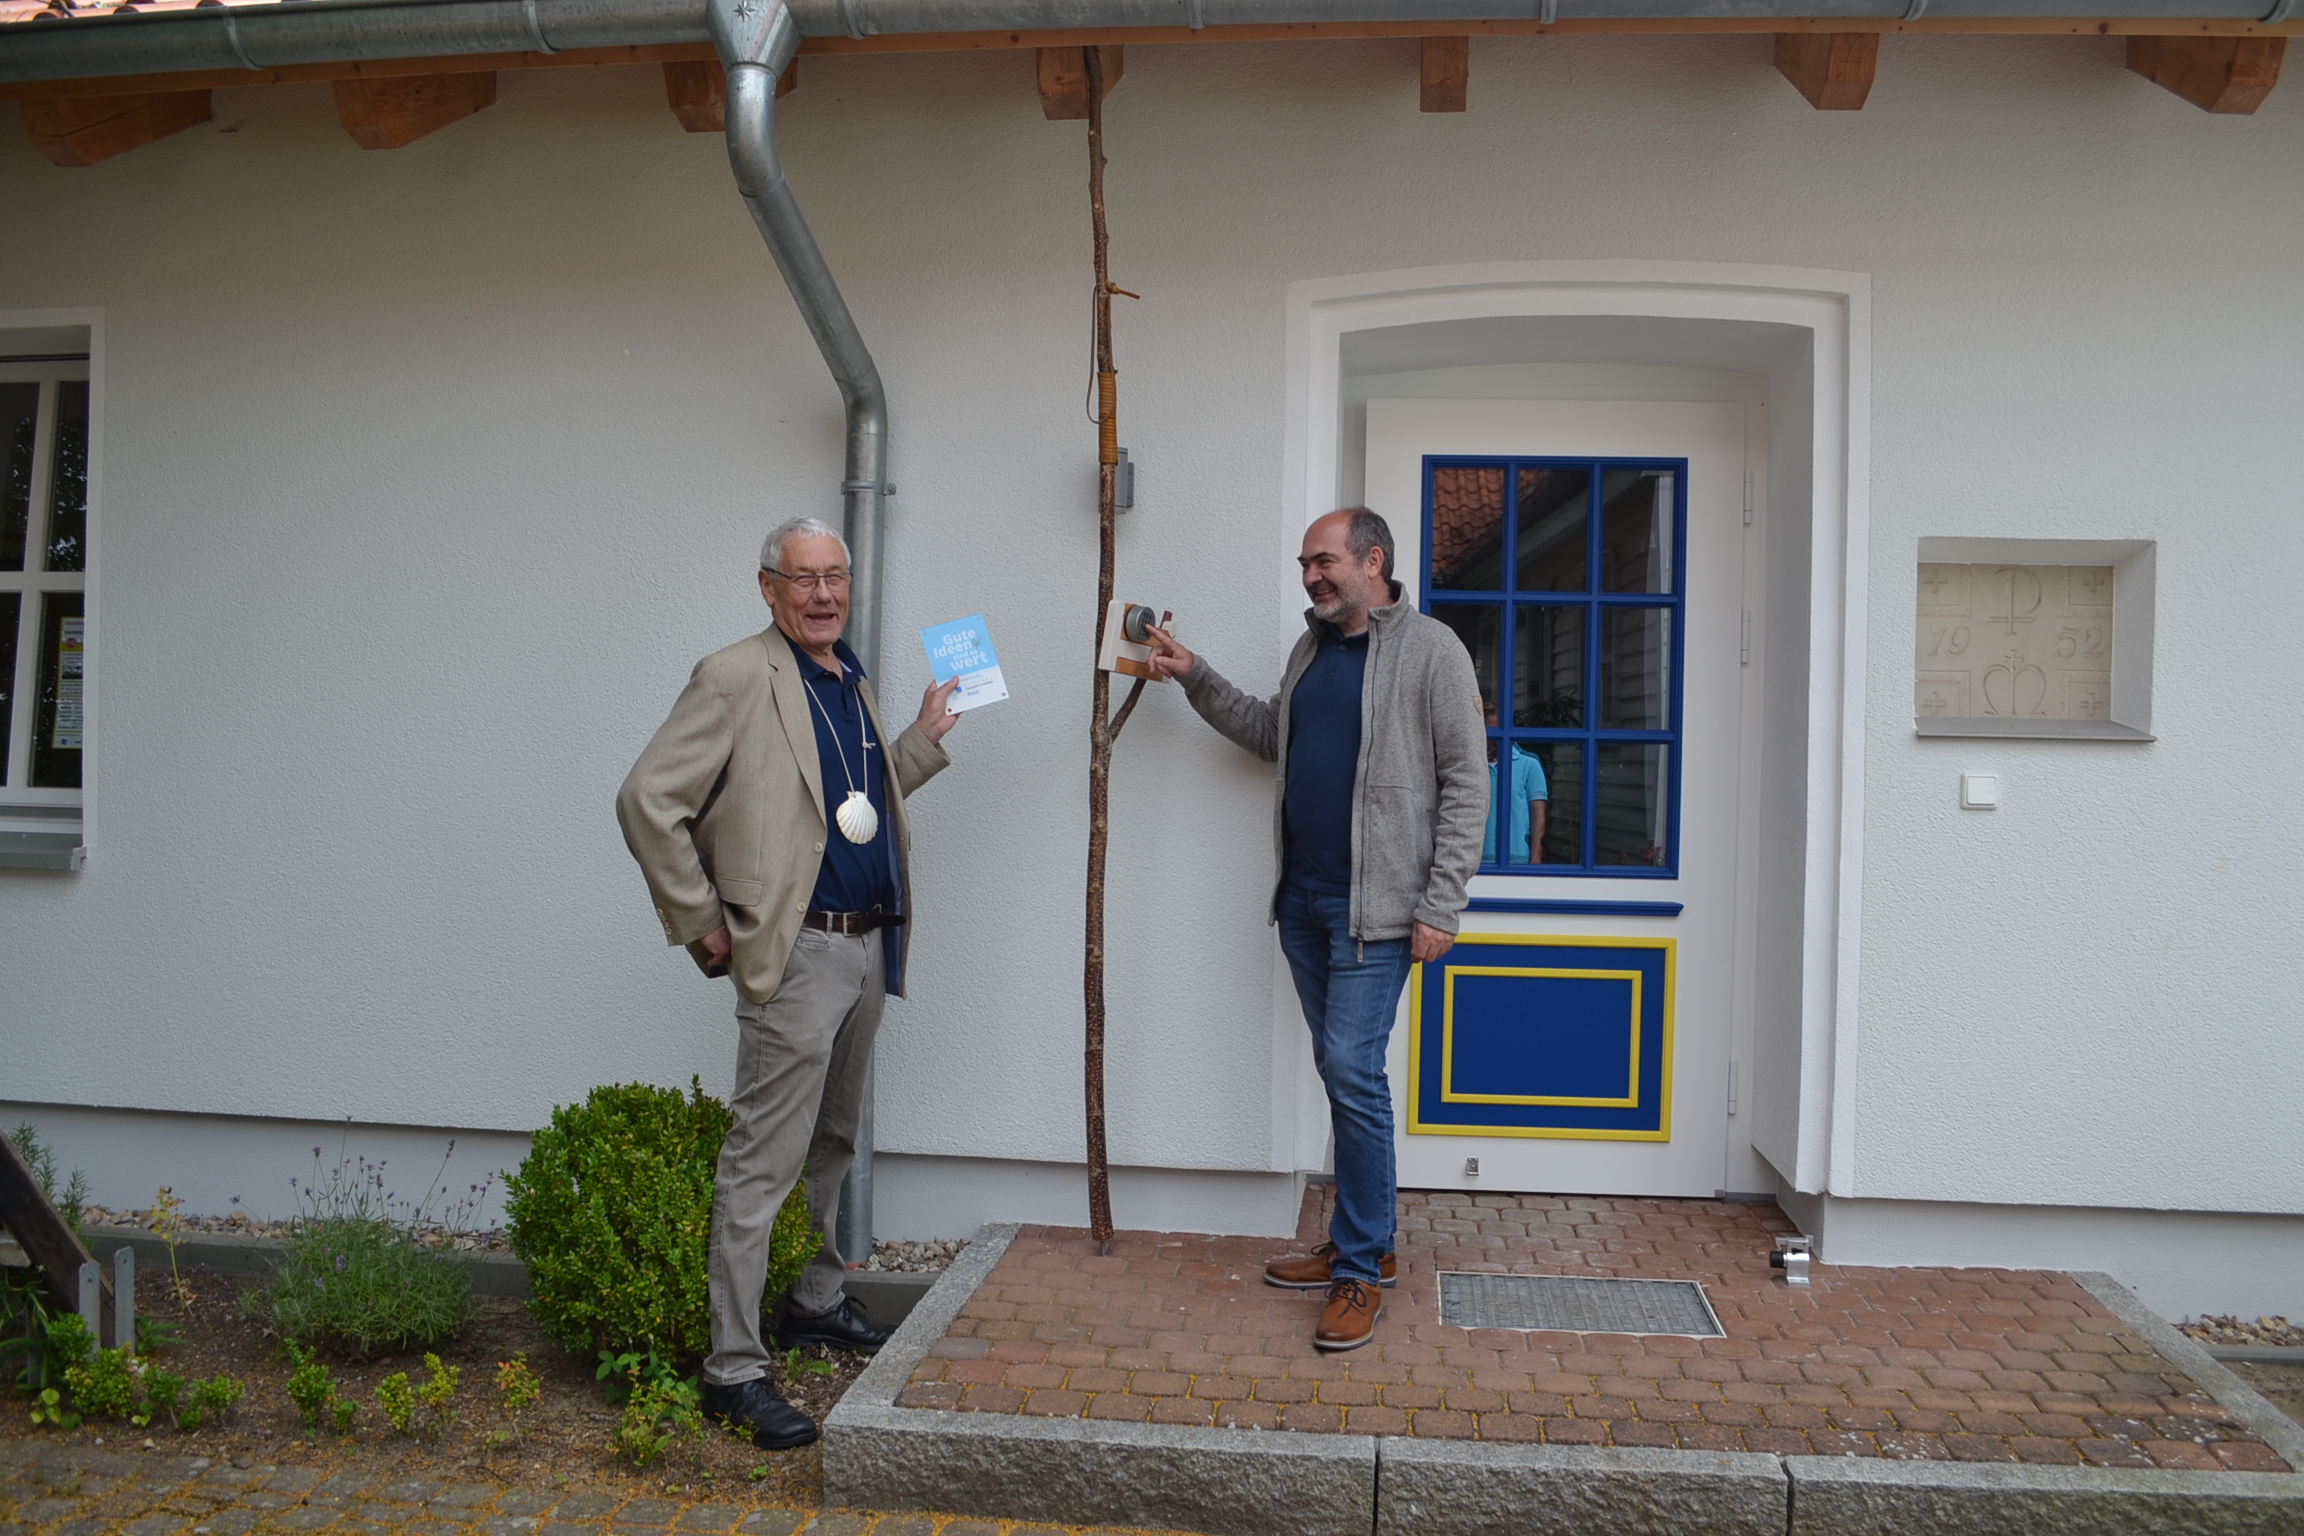 2 männliche Personen stehen vor einer Haustür. Die eine Person drückt auf die Schließanlage. Die andere Person schaut dabei zu mit einem Schild in der Hand.